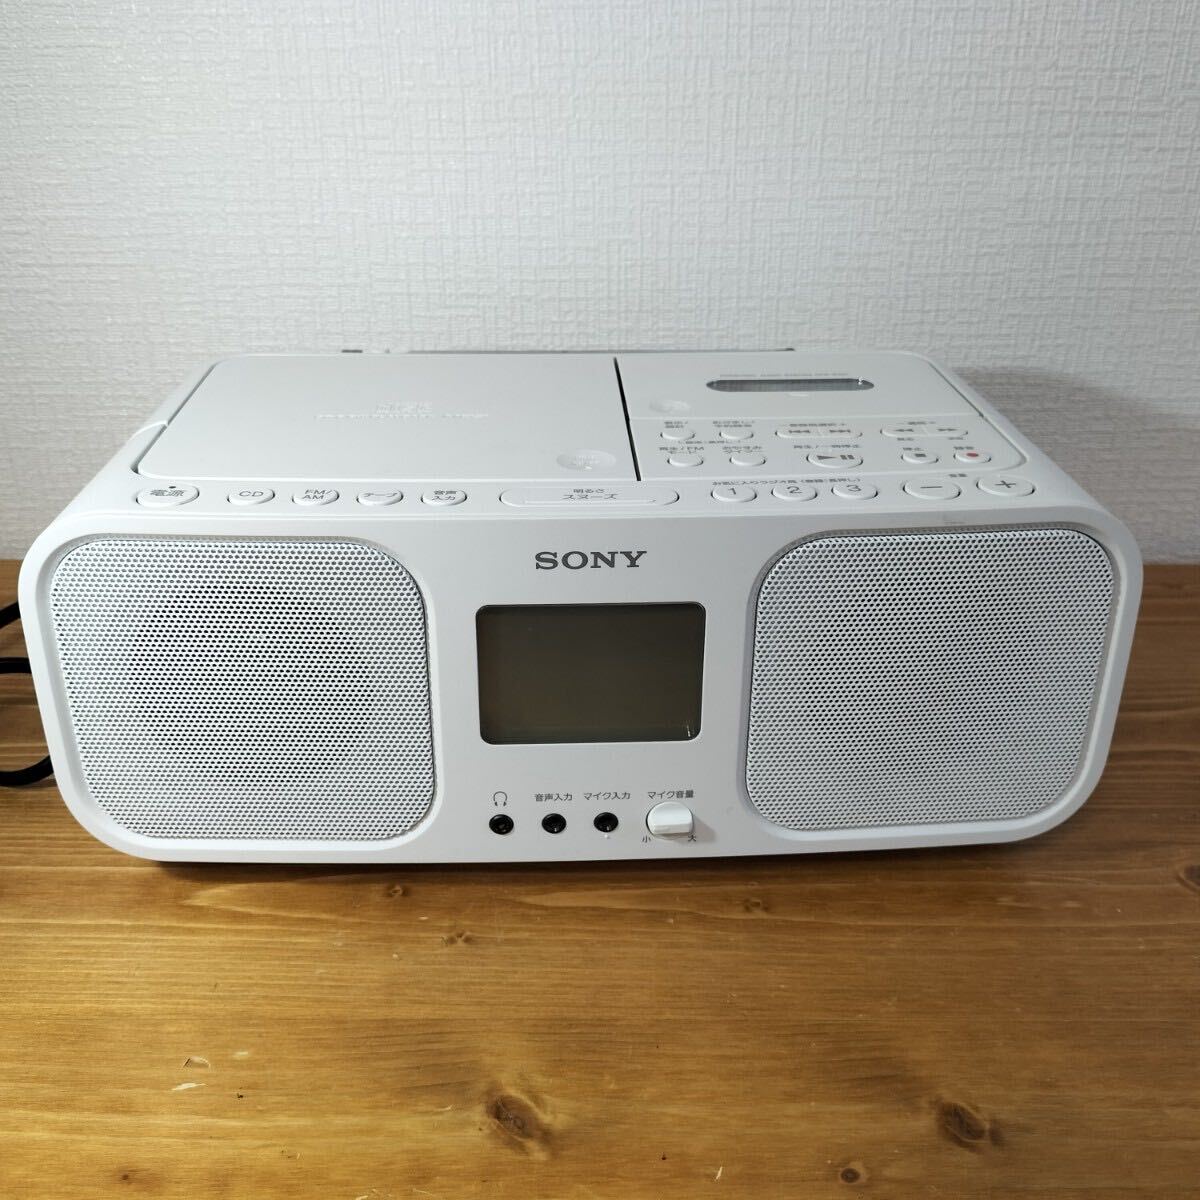 5-18 SONY ソニー CDラジカセ ラジカセ CD ラジオ パーソナルオーディオシステム ホワイト CFD-S401の画像1